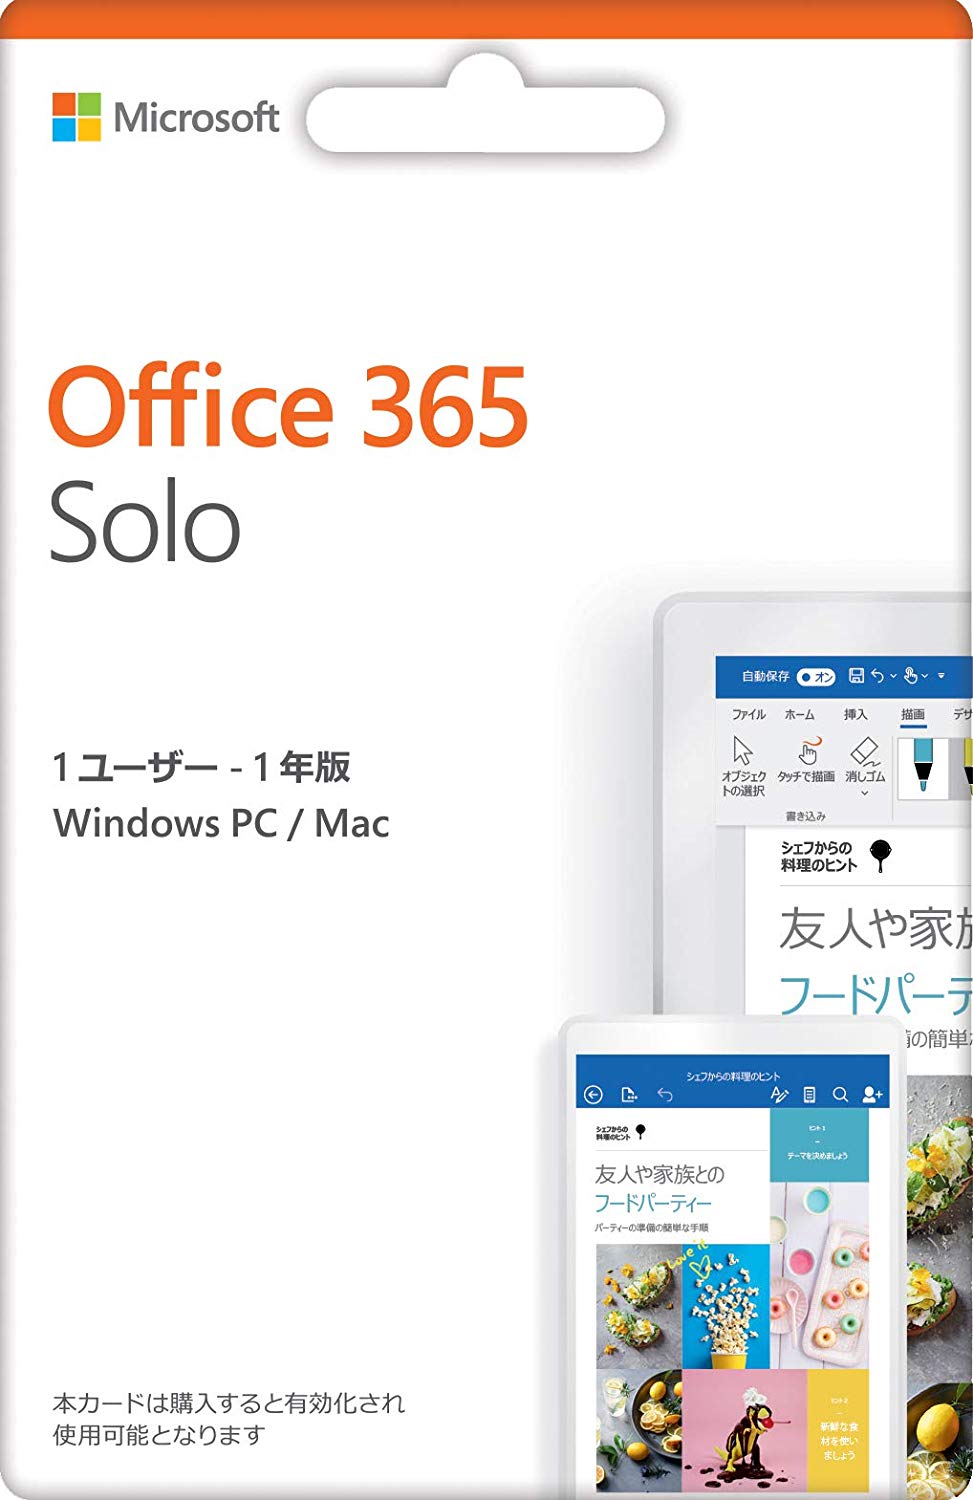 Microsoft、｢Office 365 Solo｣購入で3,000円キャッシュバックするキャンペーンを開催中